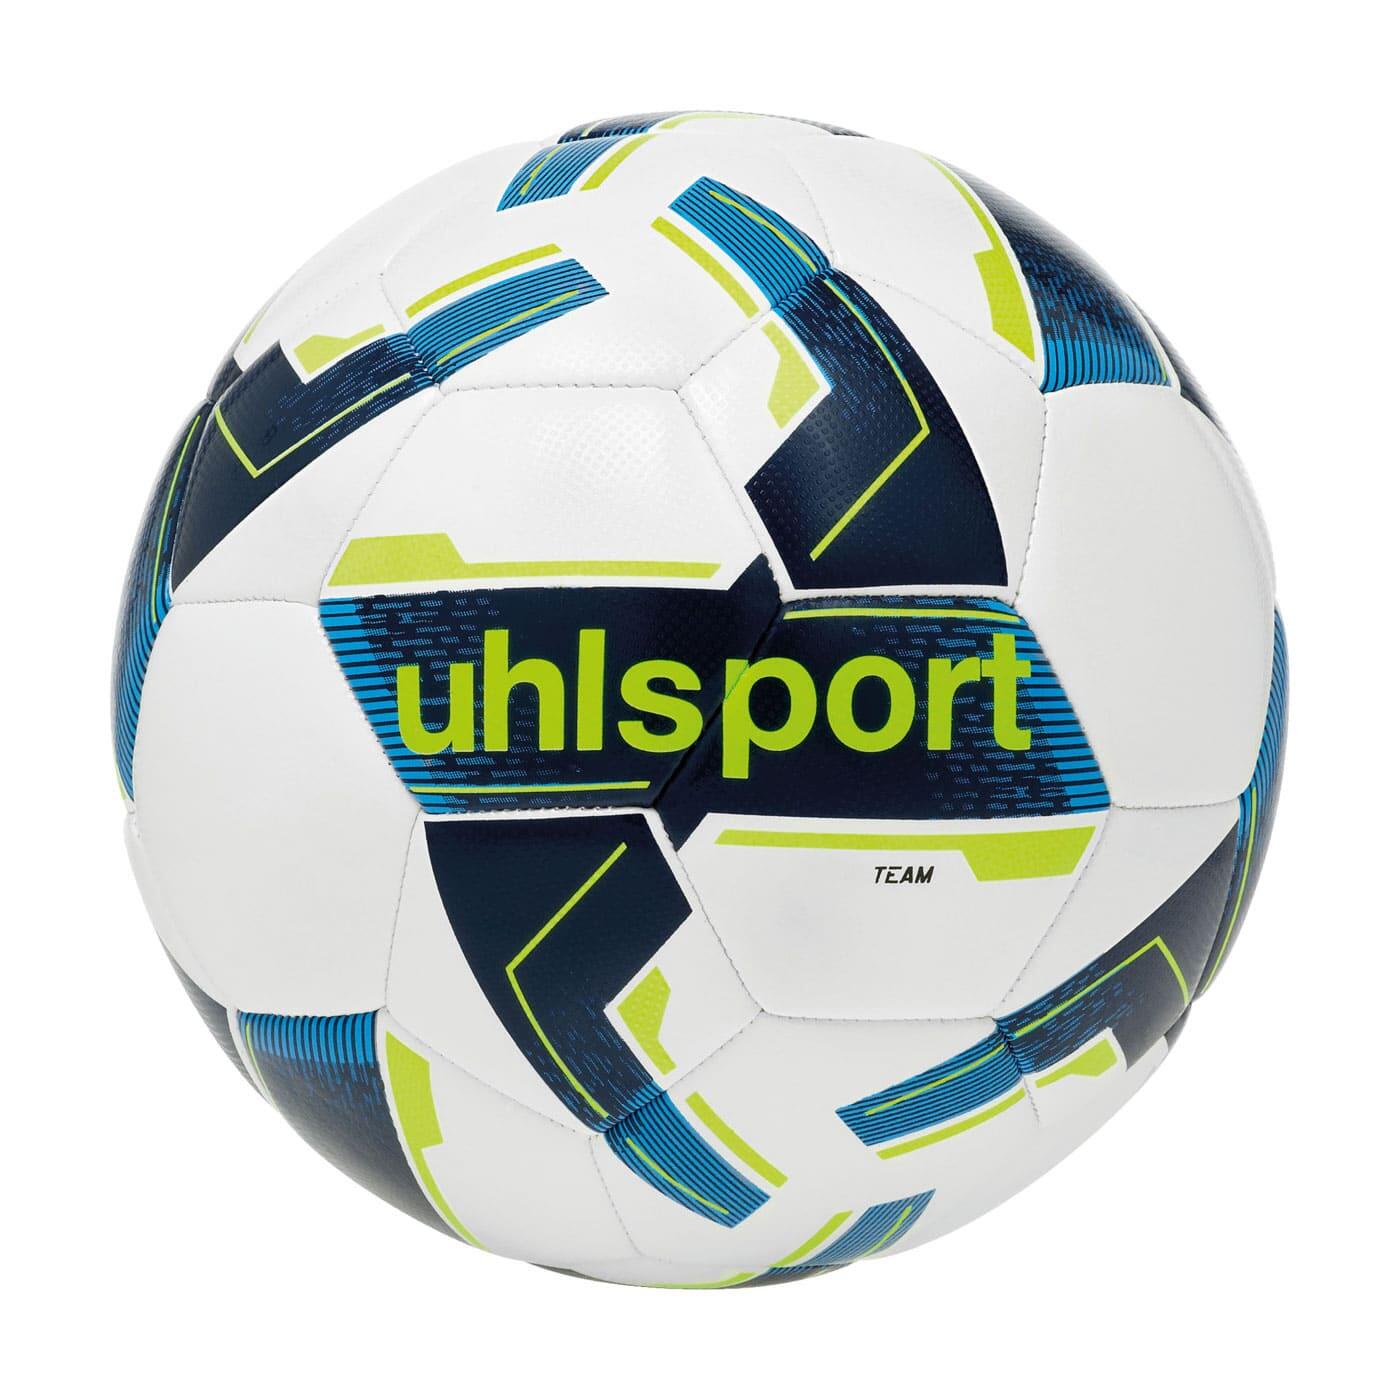 Uhlsport Team Training Football Size 4 - White 1/2